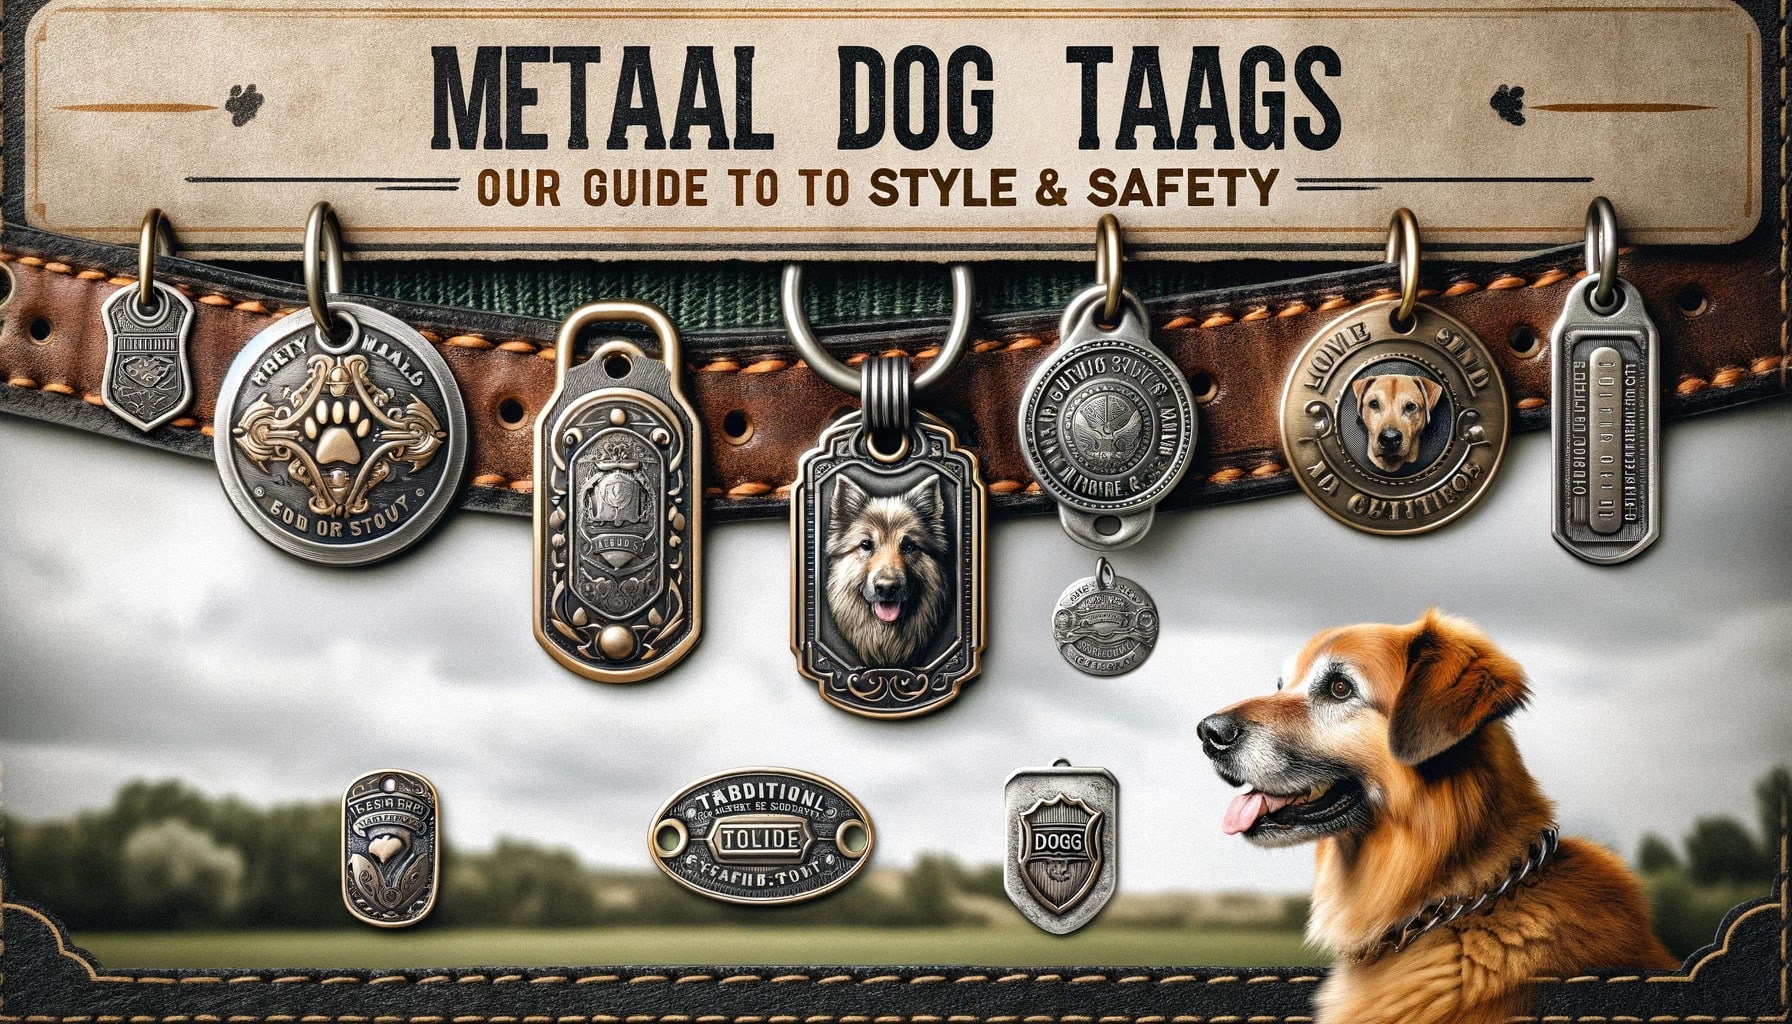 Traditional Metal Dog Tags